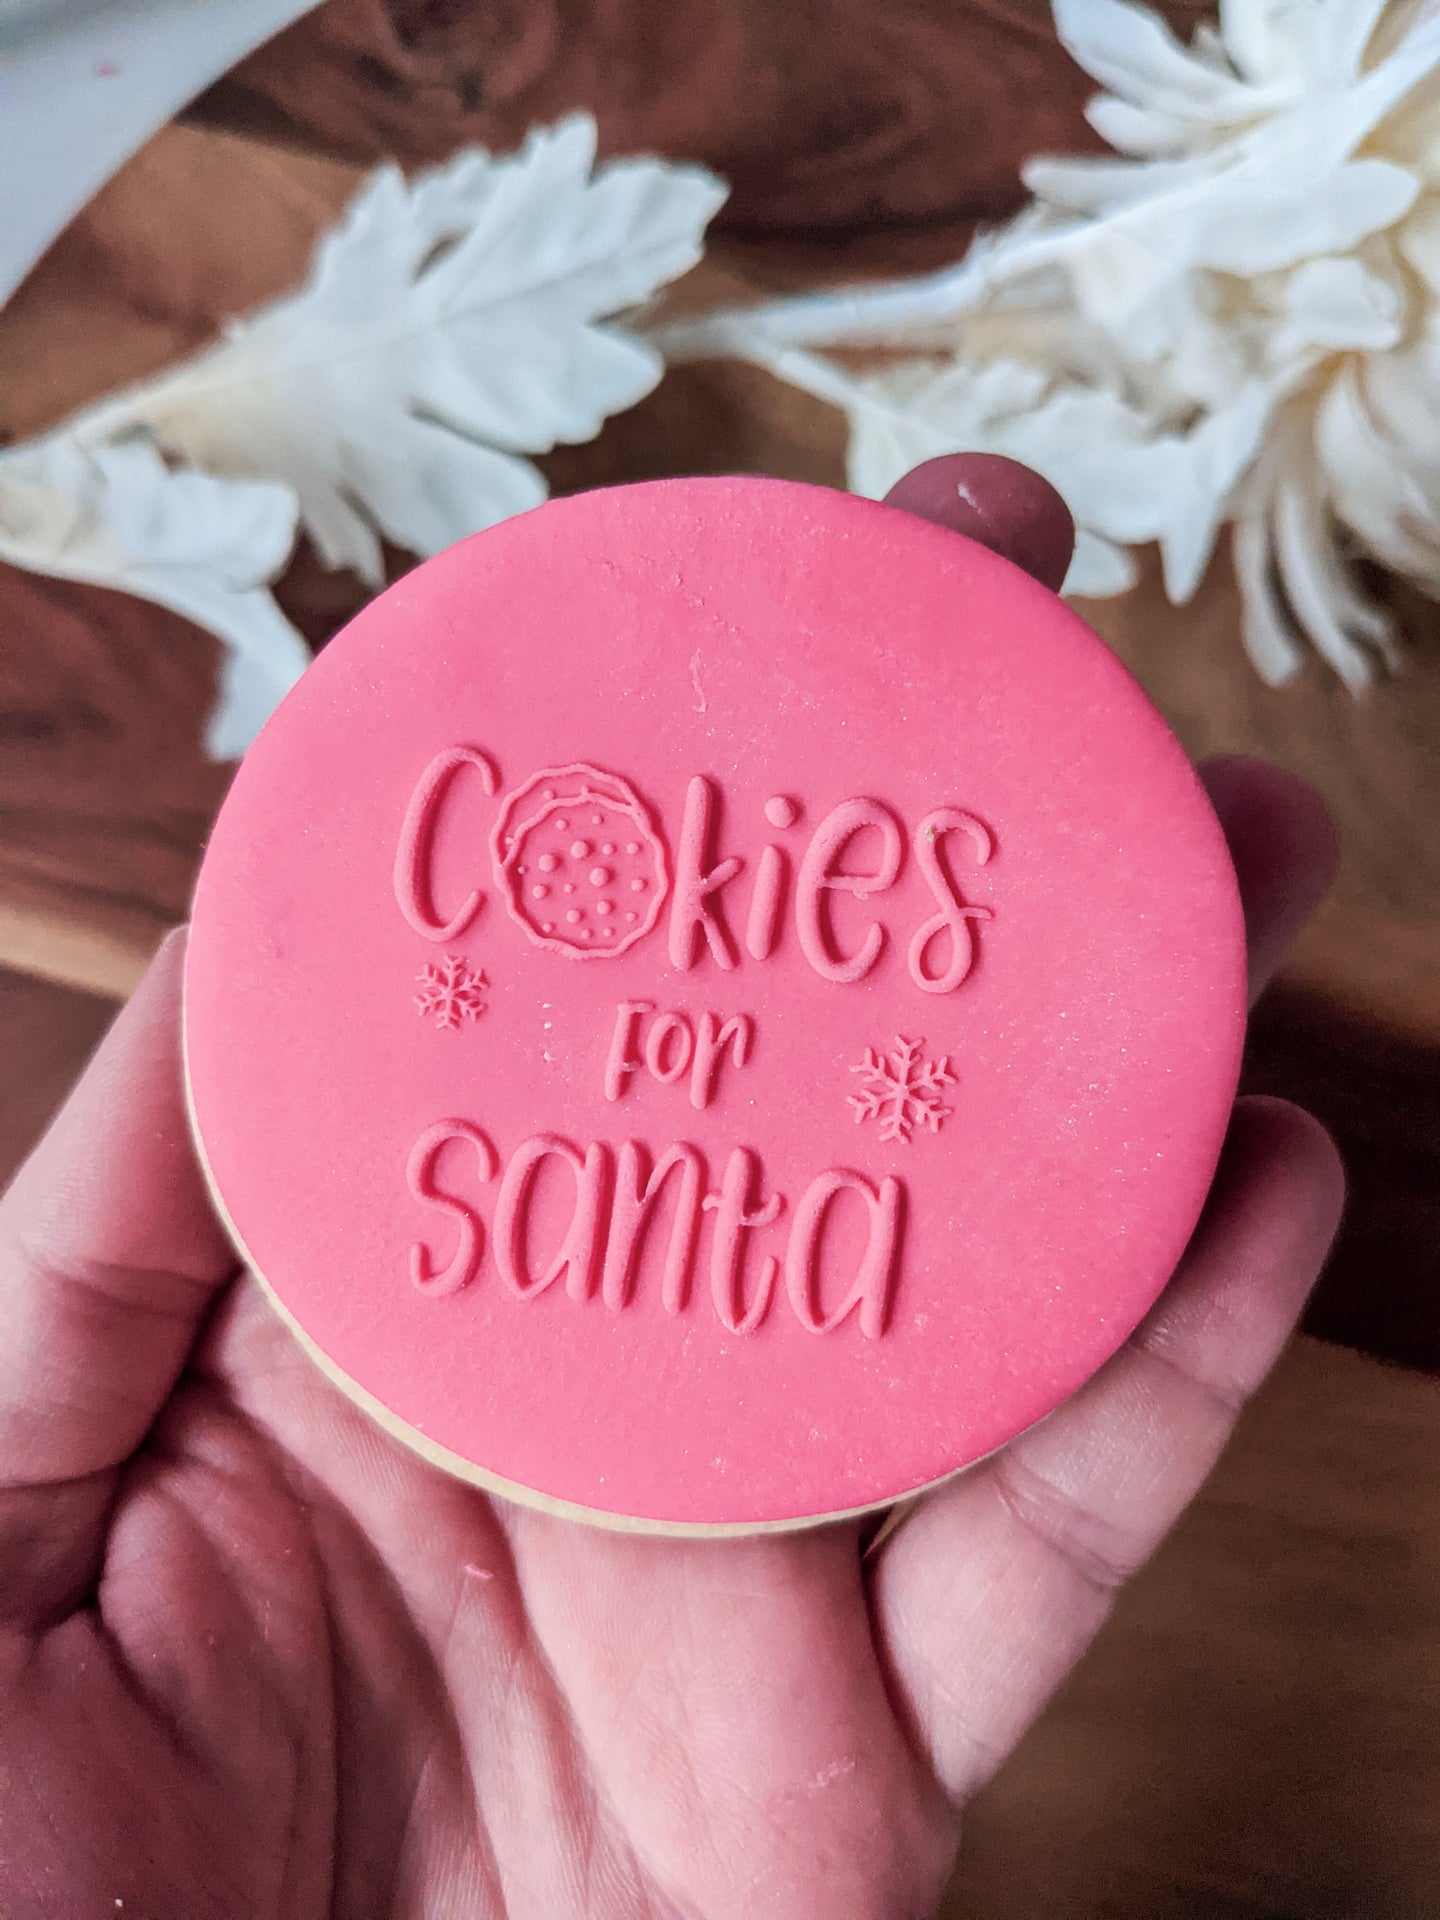 Cookies for Santa Fondant debosser